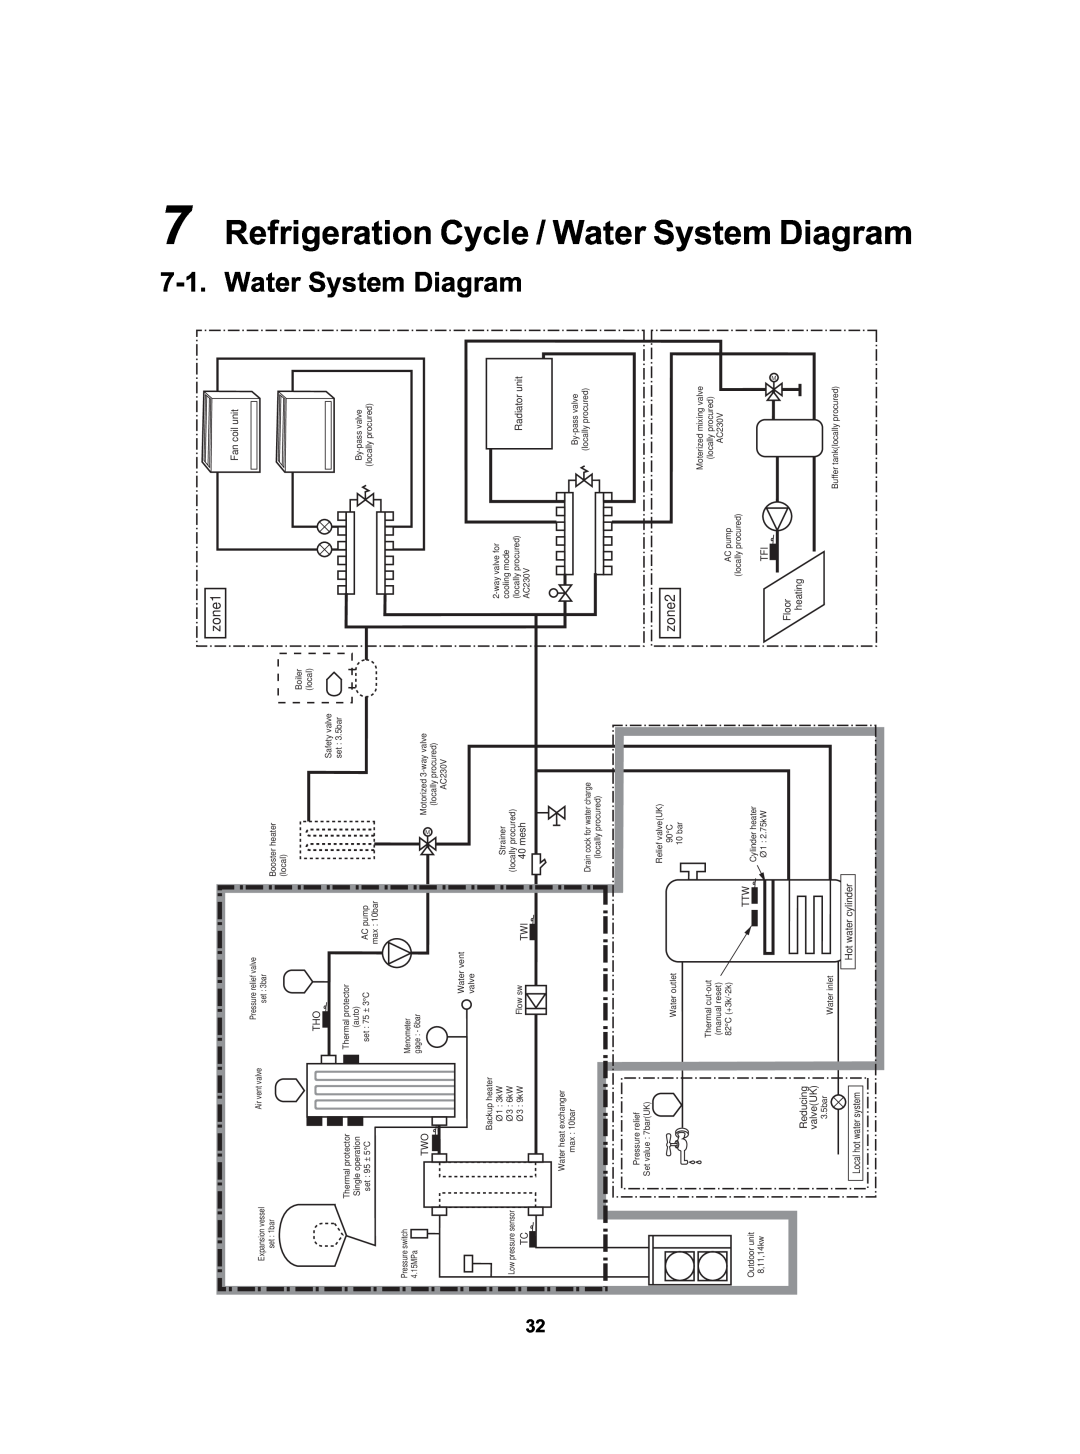 Toshiba HWS-3001CSHM3-E(-UK), HWS-802XWHT6-E, HWS-802H-E System Diagram, Refrigeration Cycle / Water 